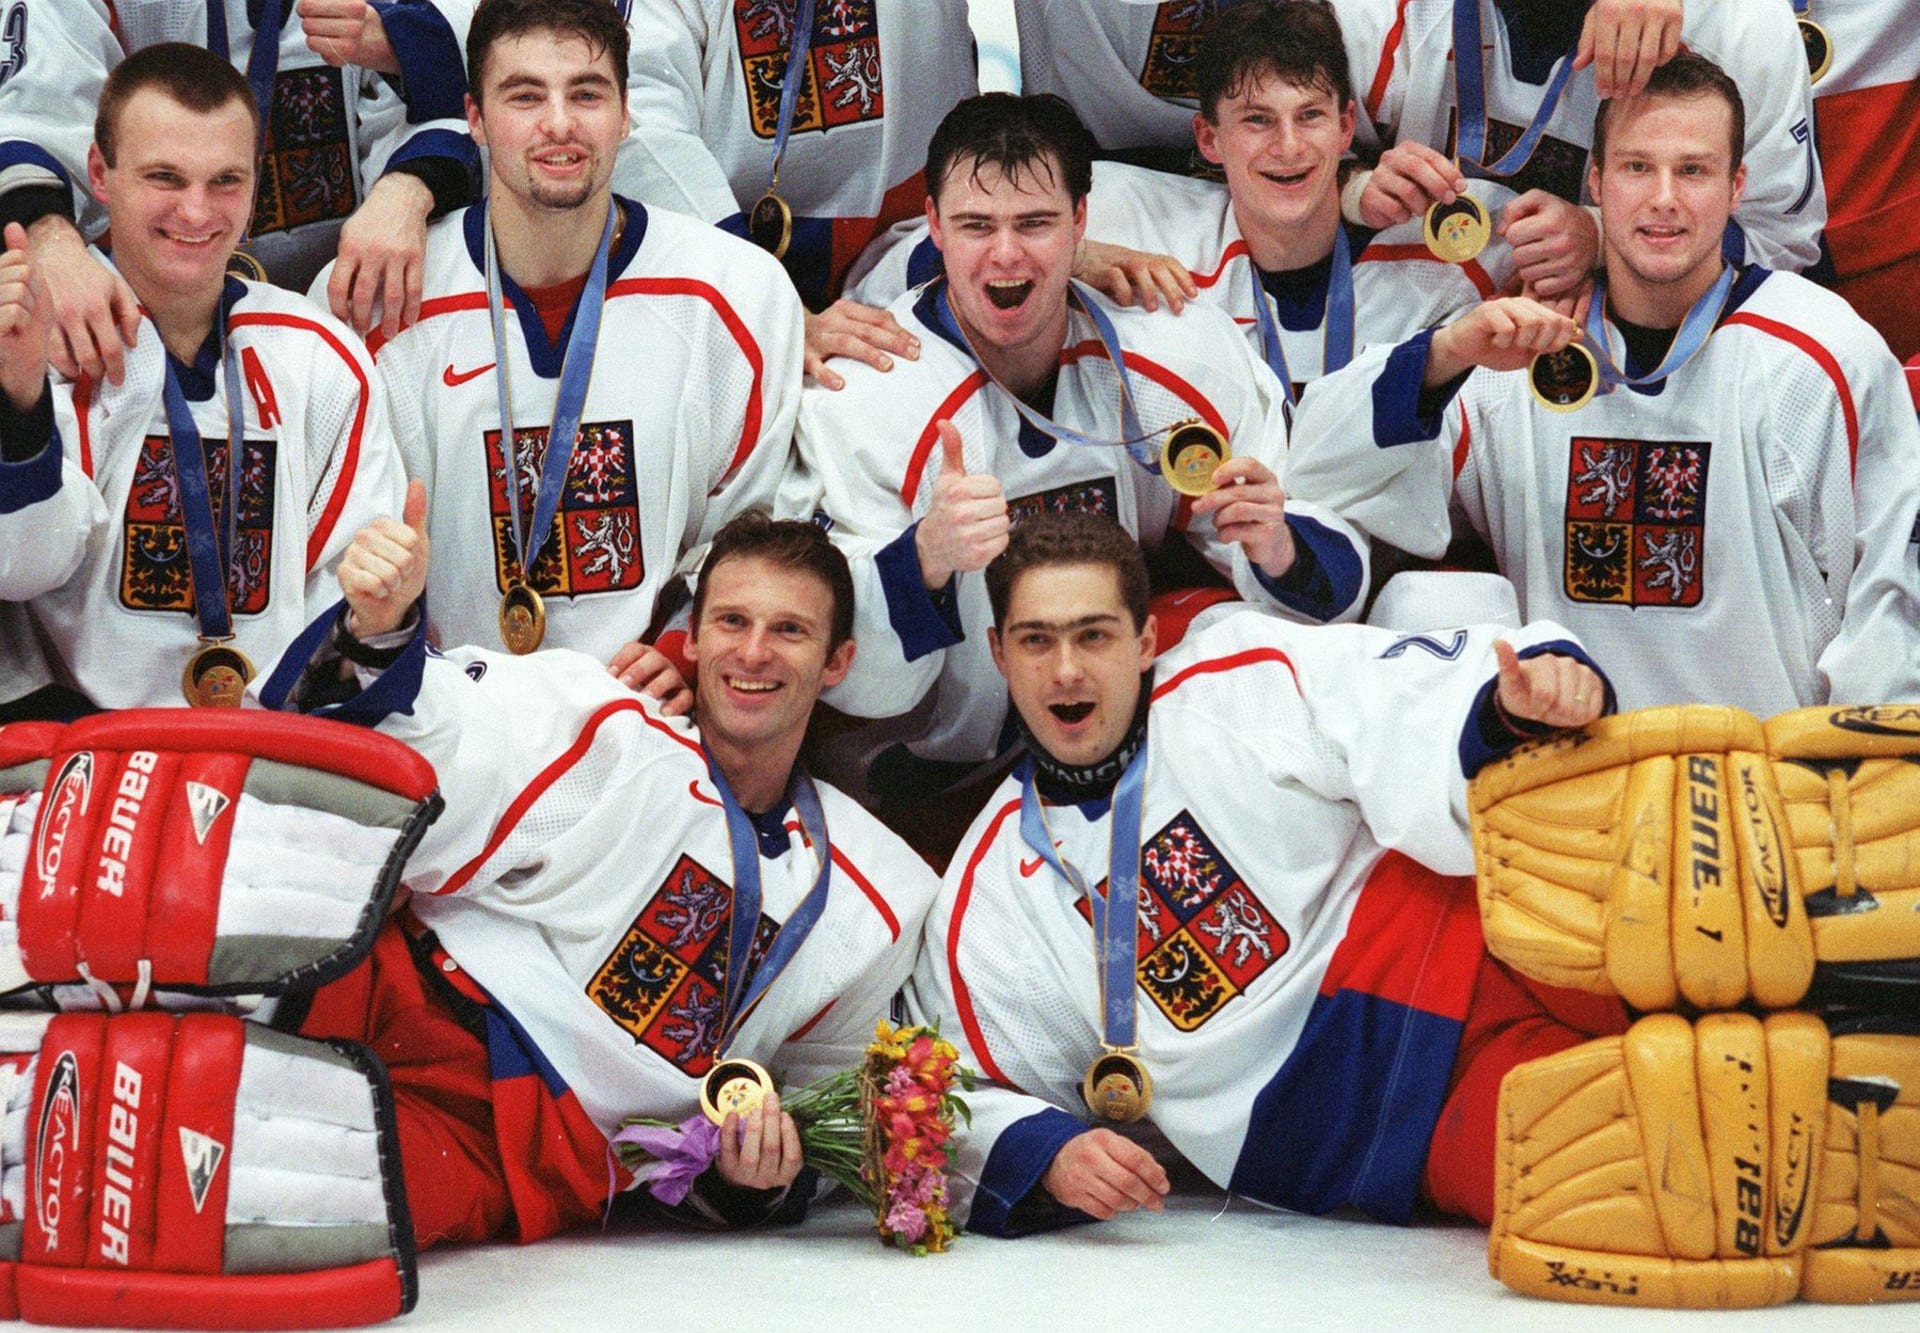 Olympijské zlato z Nagana je dodnes považováno za největší úspěch českého polistopadového hokeje.